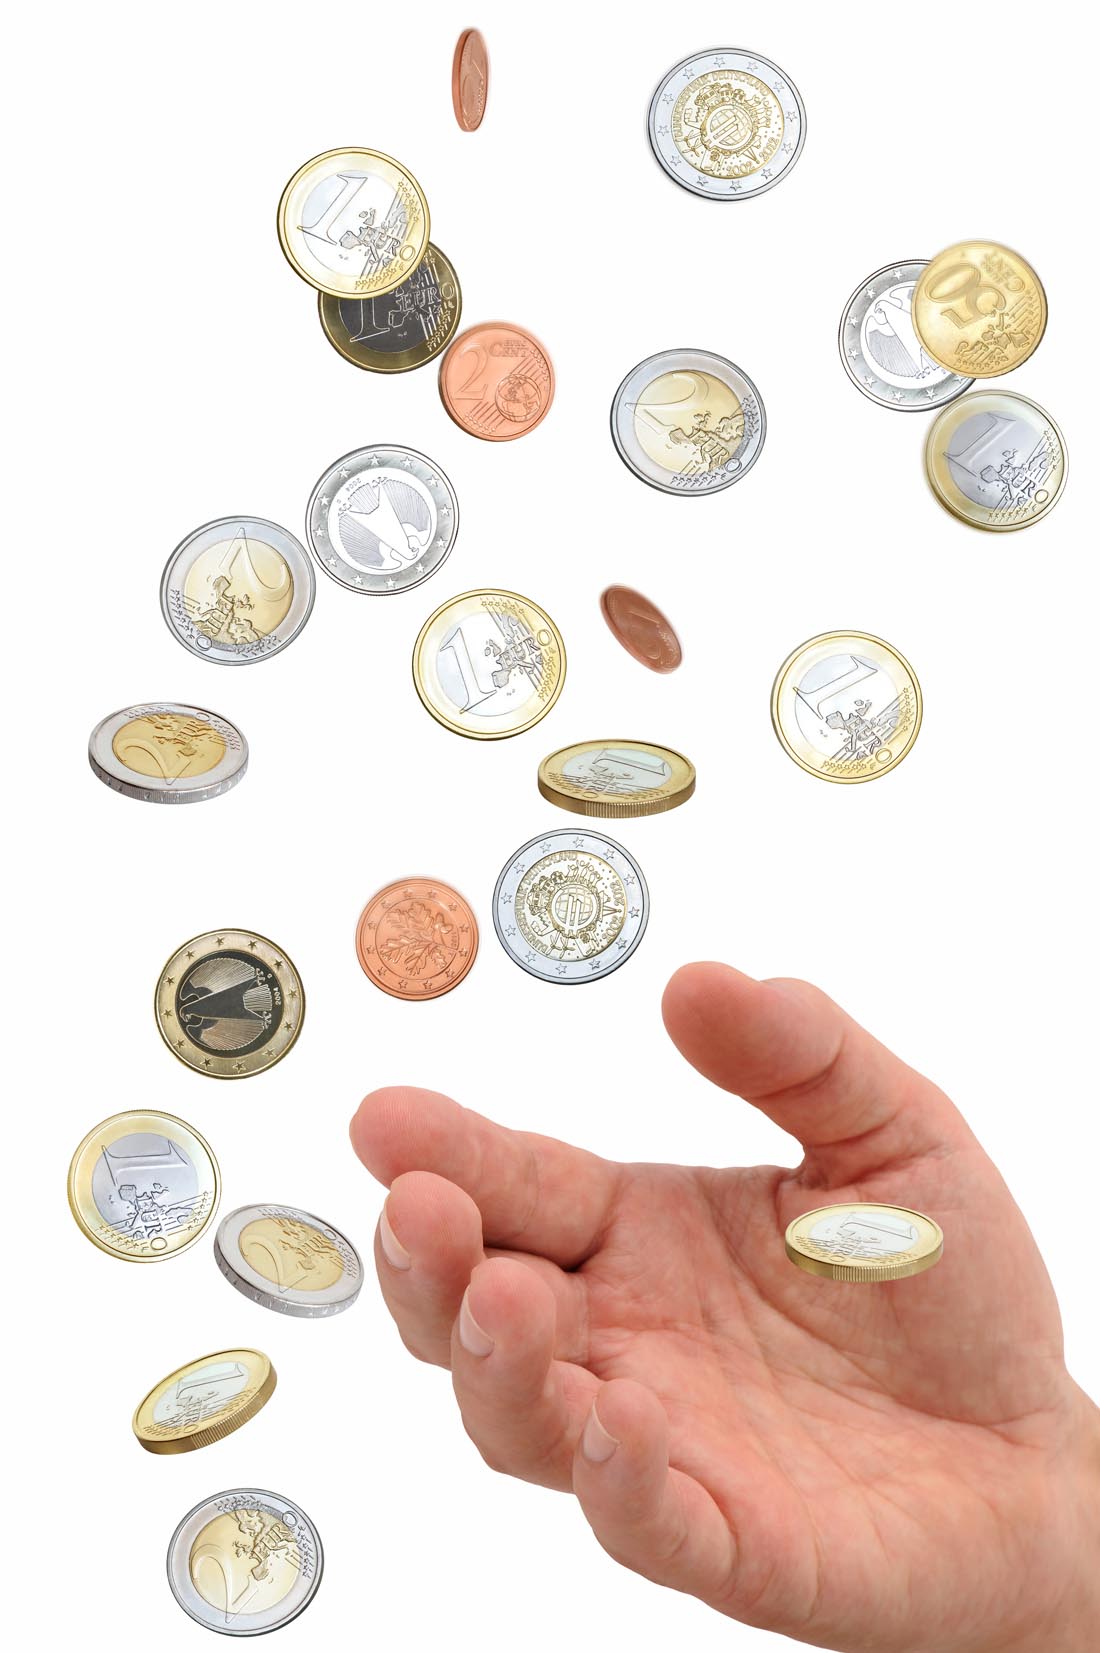 区块链挖矿 记账评价(2023/04/08)——可组合非同质化代币